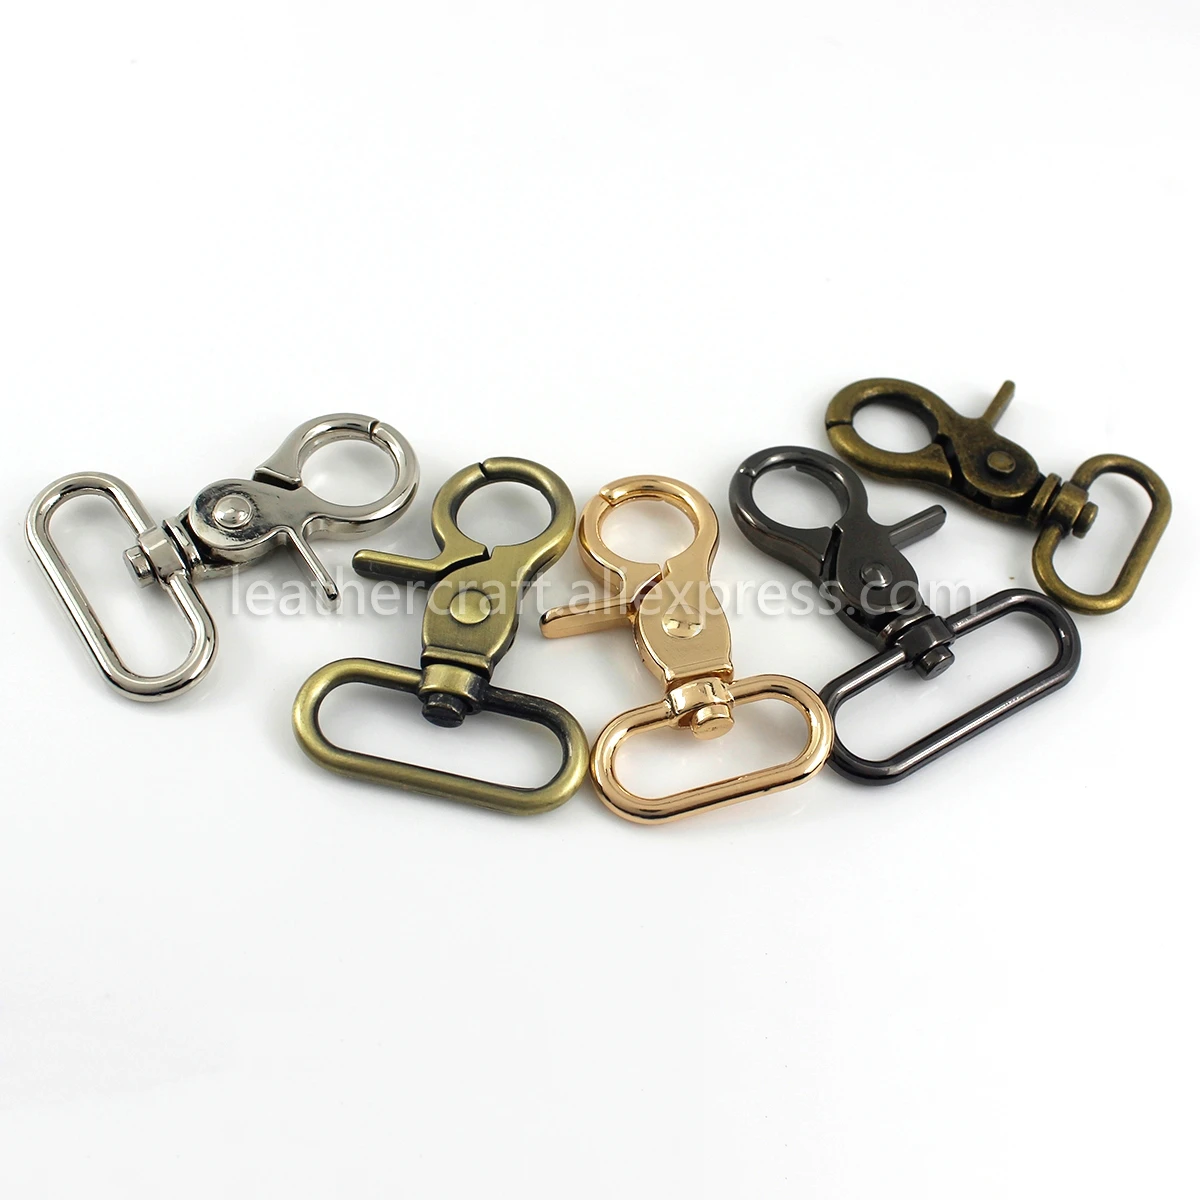 1pcs Metal Snap Hook Trigger Lobster Clasps Clips Oval Ring Spring Gate Leather Craft Pet Leash Bag Strap Belt Webbing